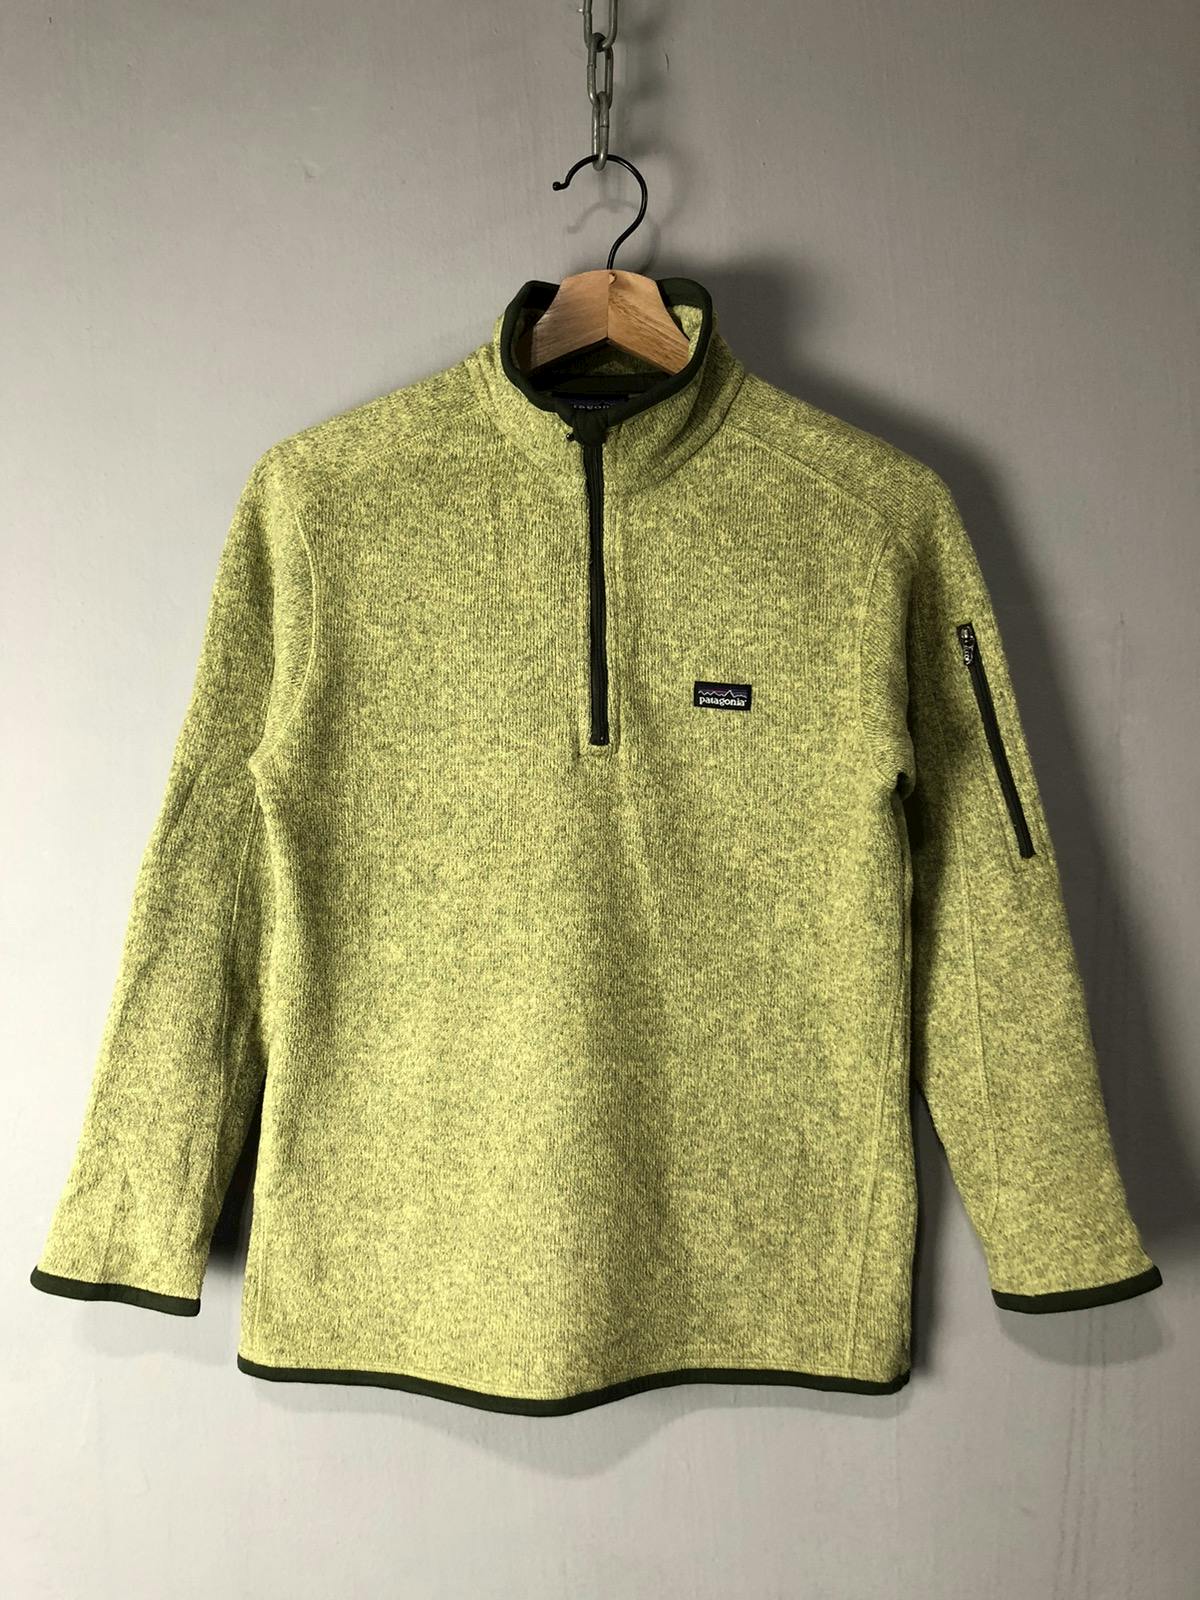 Patagonia fleece jacket - 1